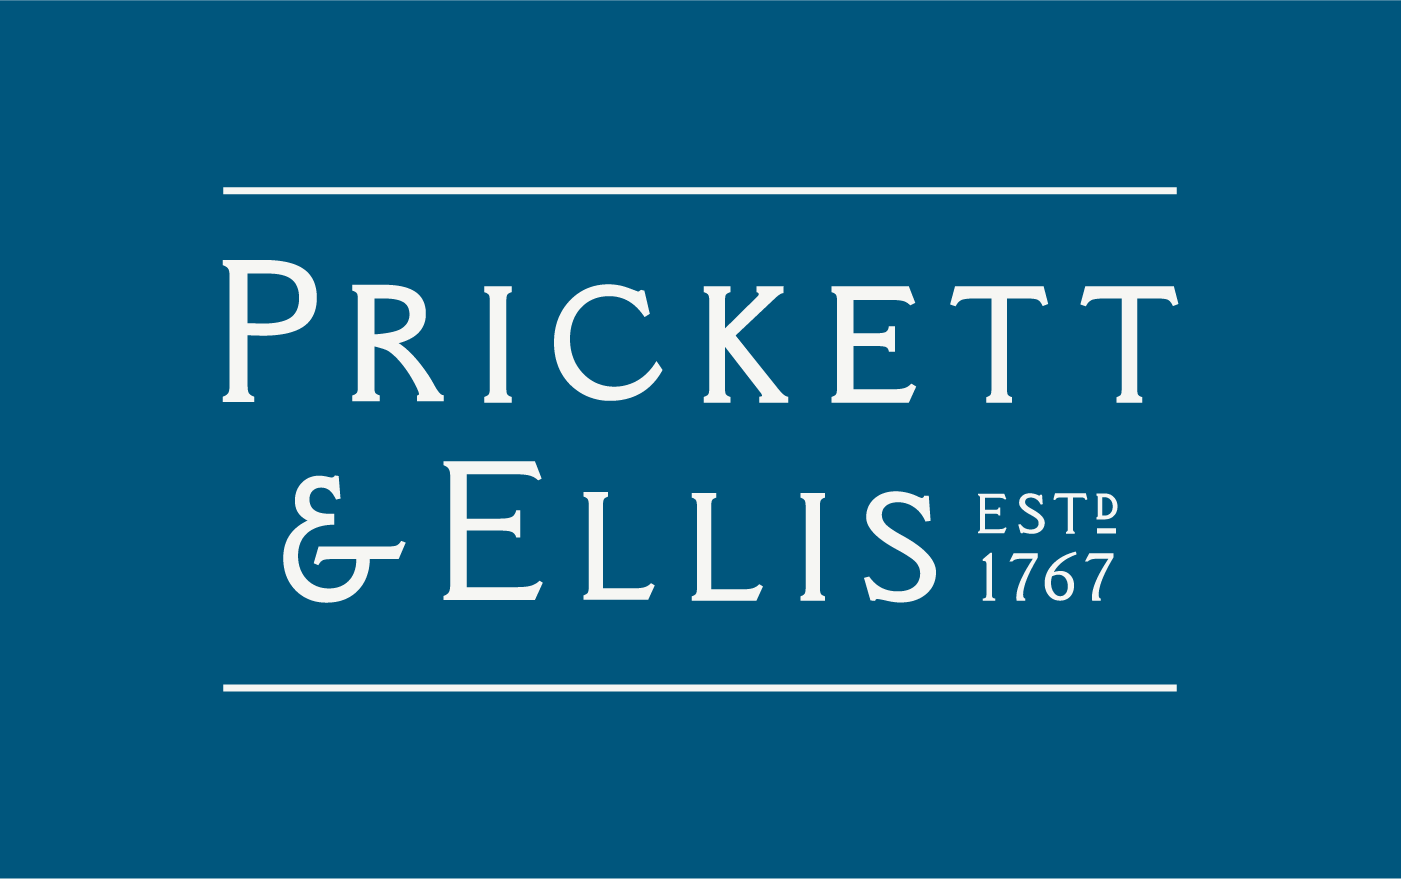 pricket & ellis logo